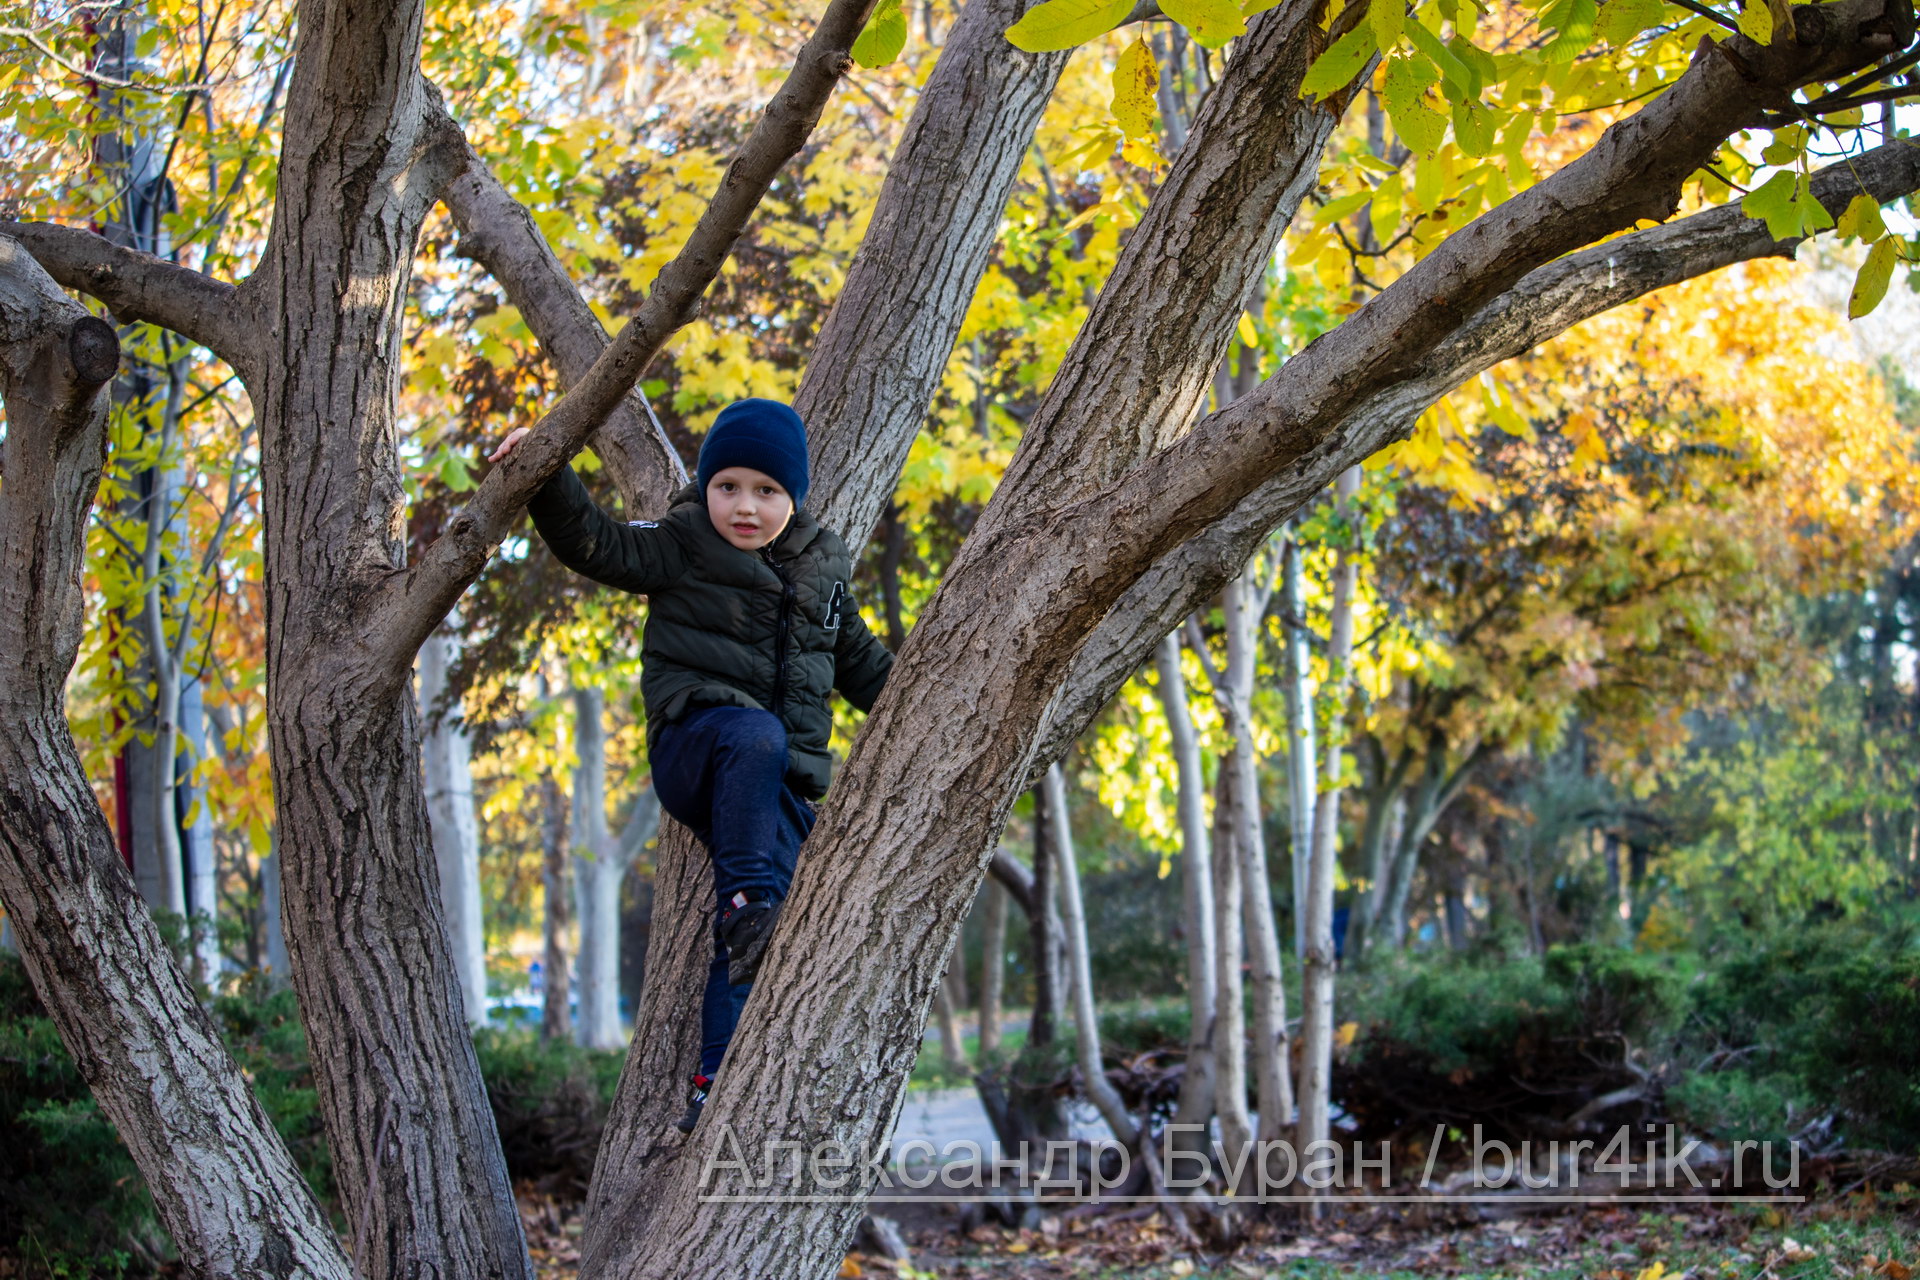 Мальчик лезет дерева в осеннем парке